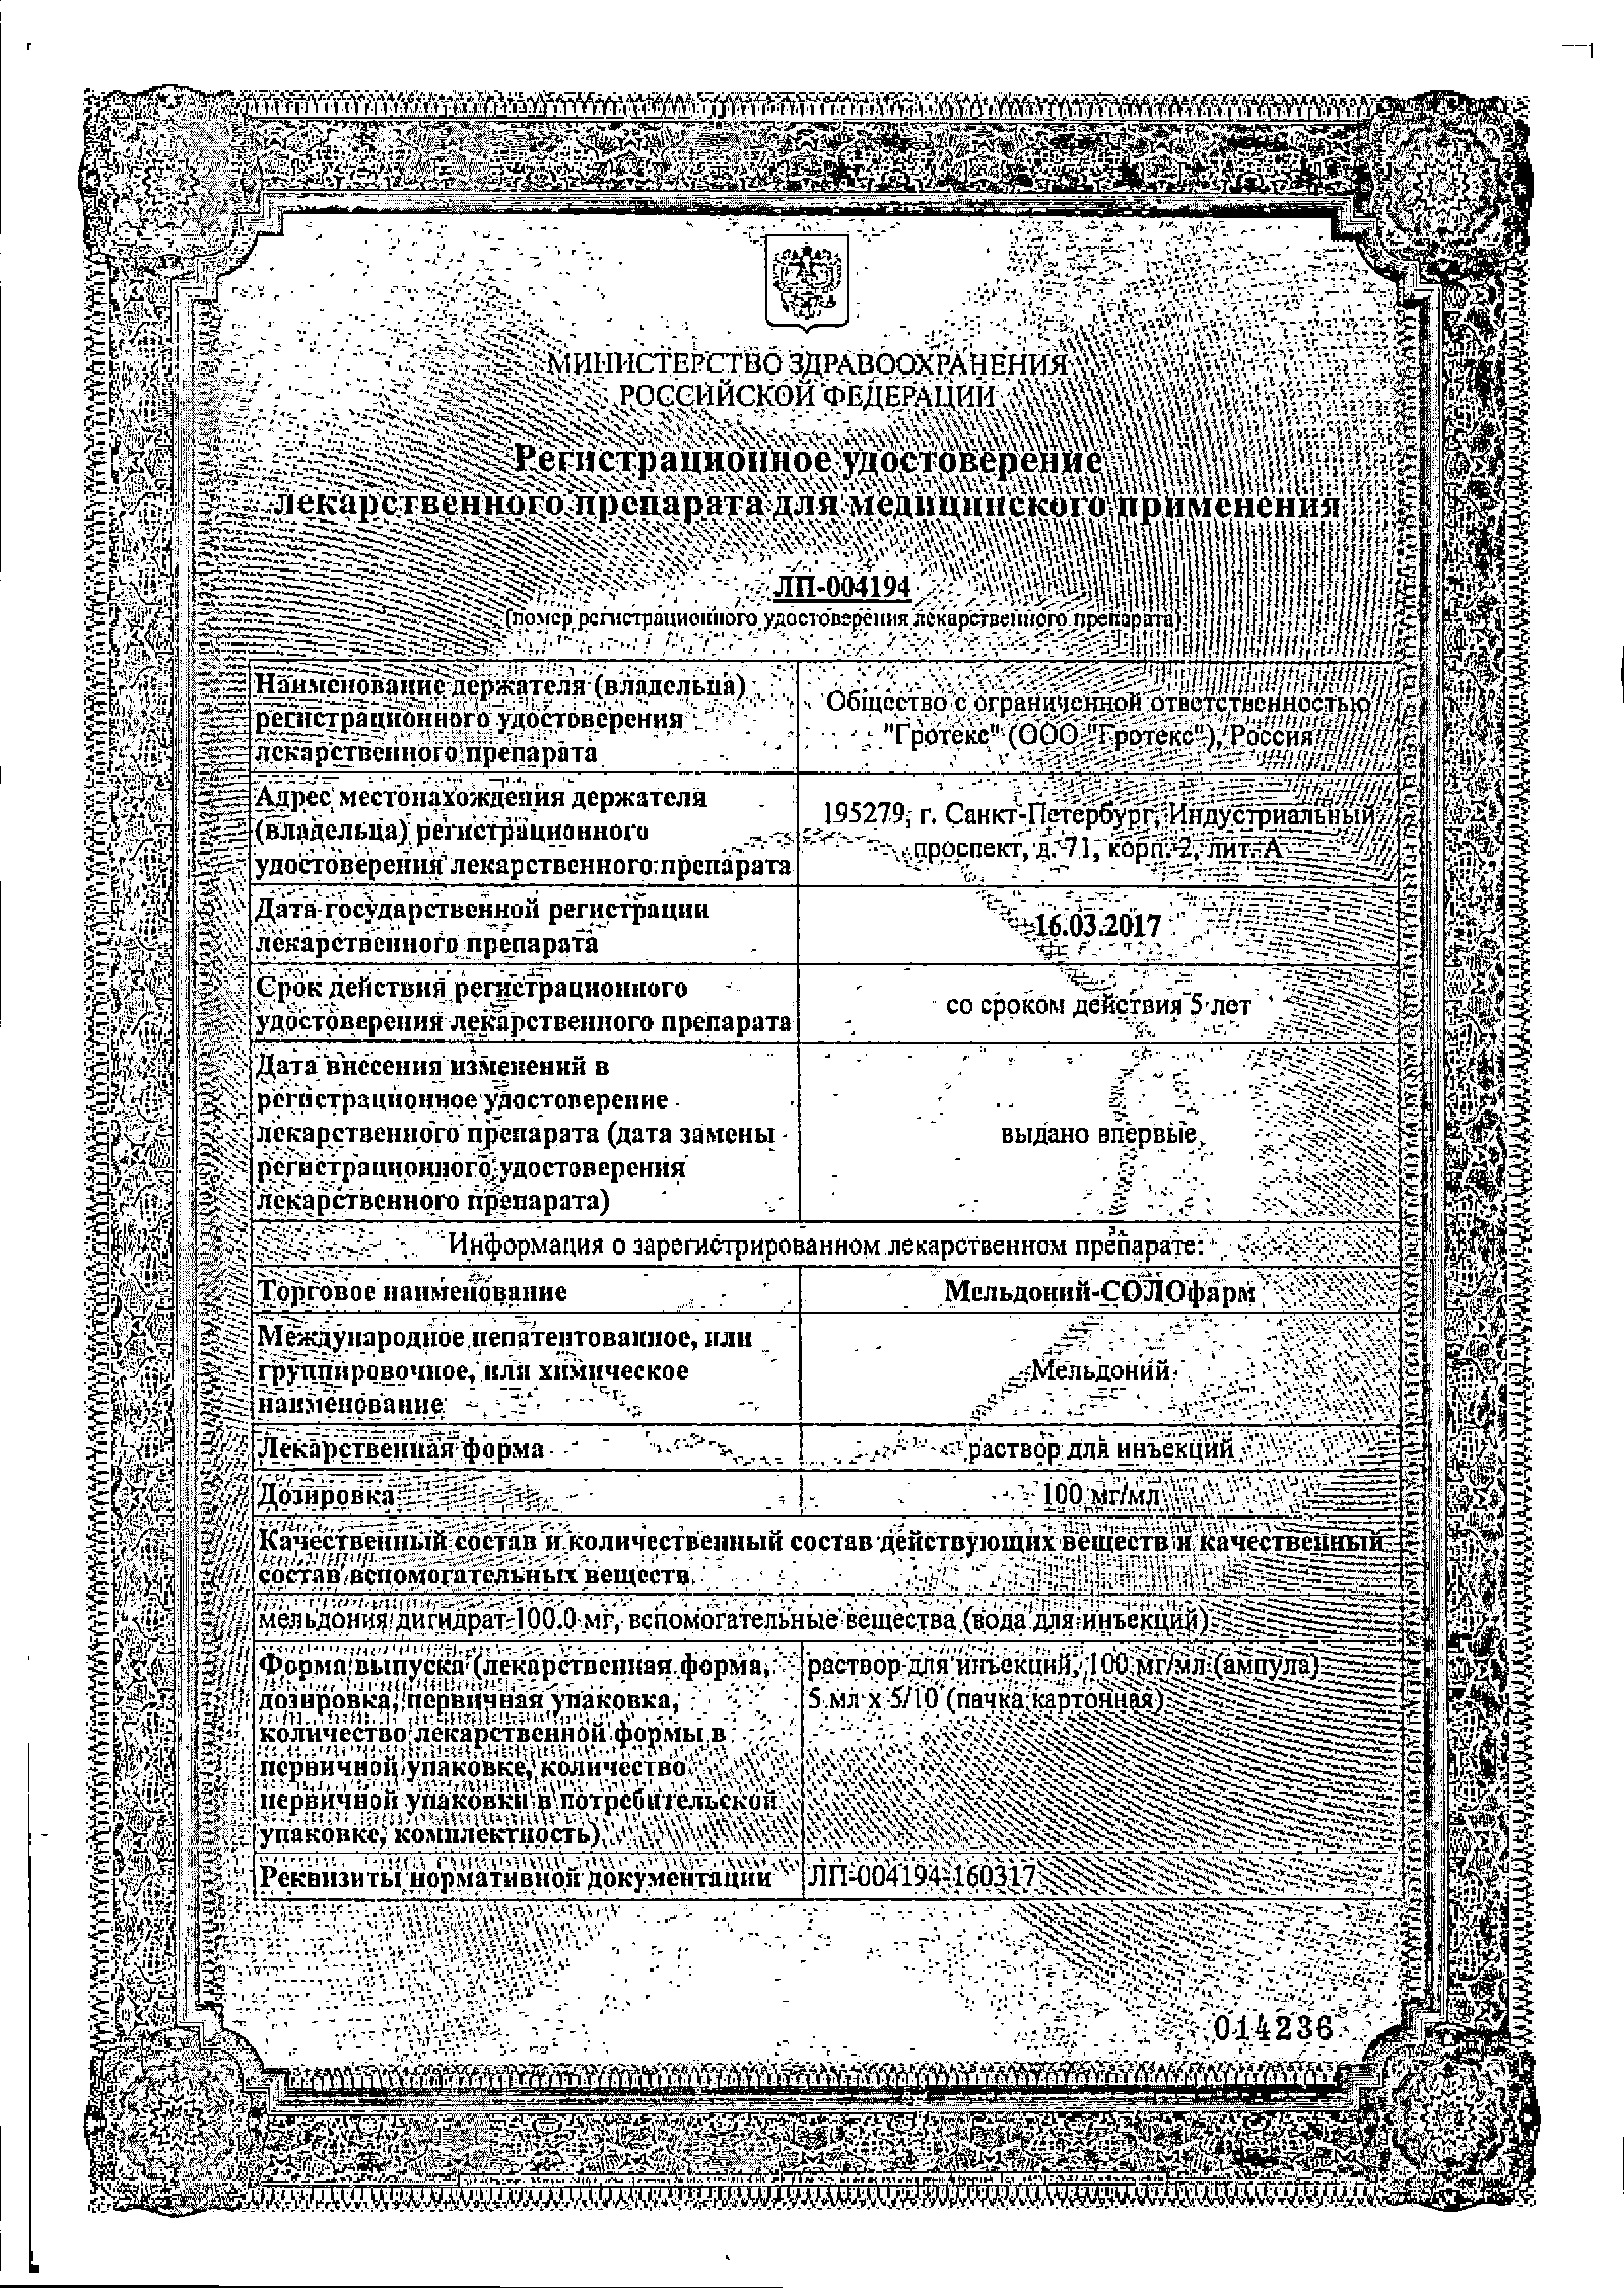 Мельдоний-СОЛОфарм сертификат